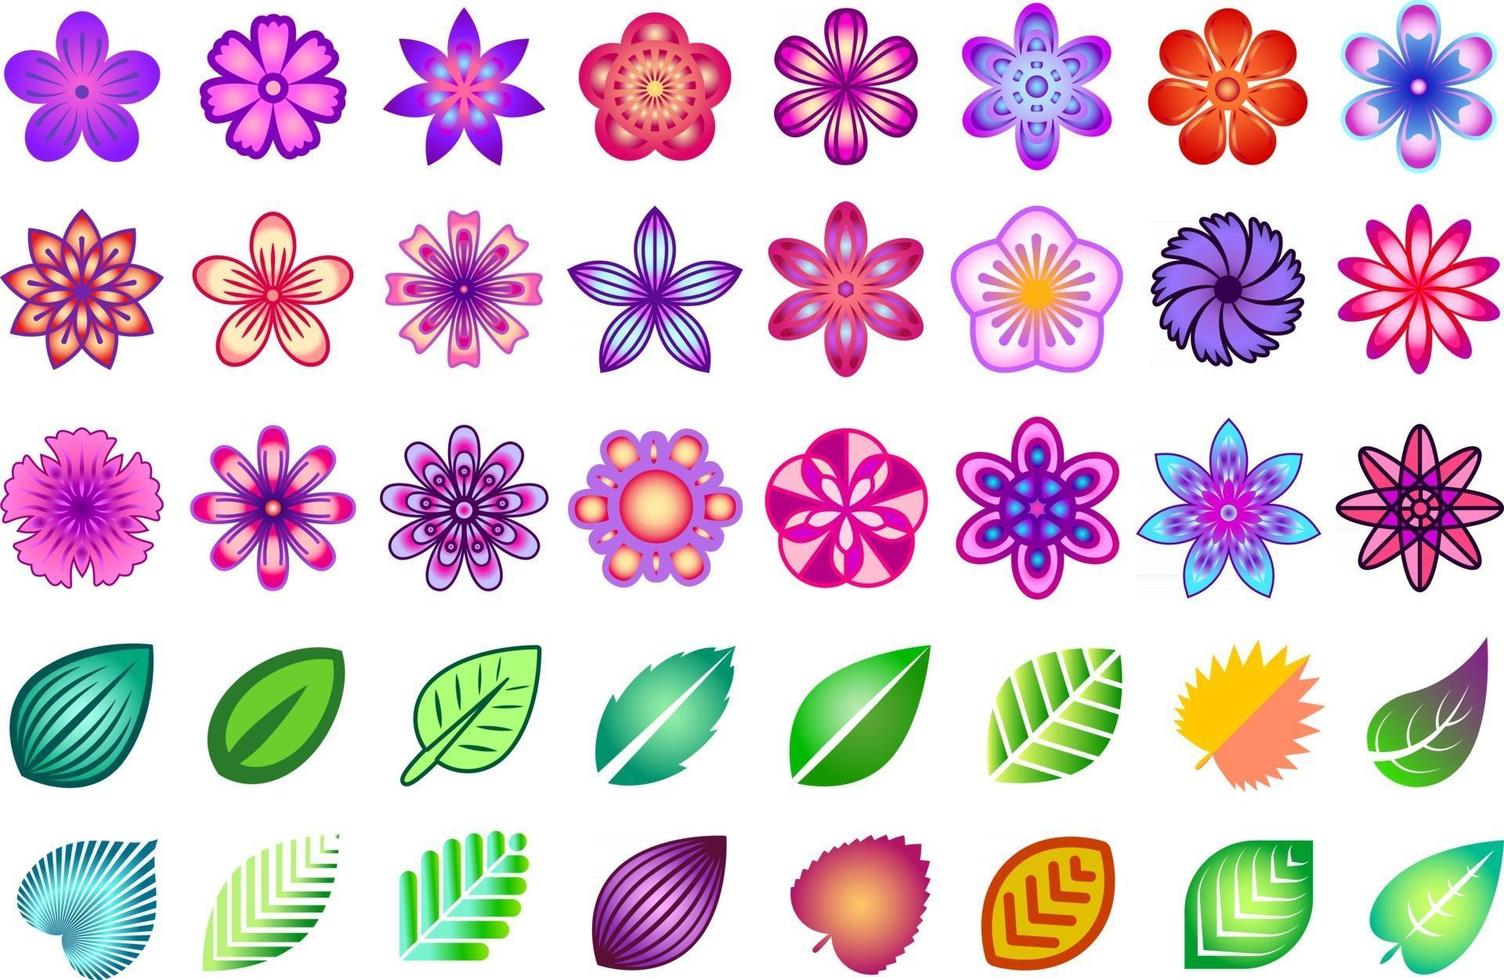 ensemble floral coloré. collection de fleurs et de feuilles stylisées colorées. éléments de conception florale. vecteur